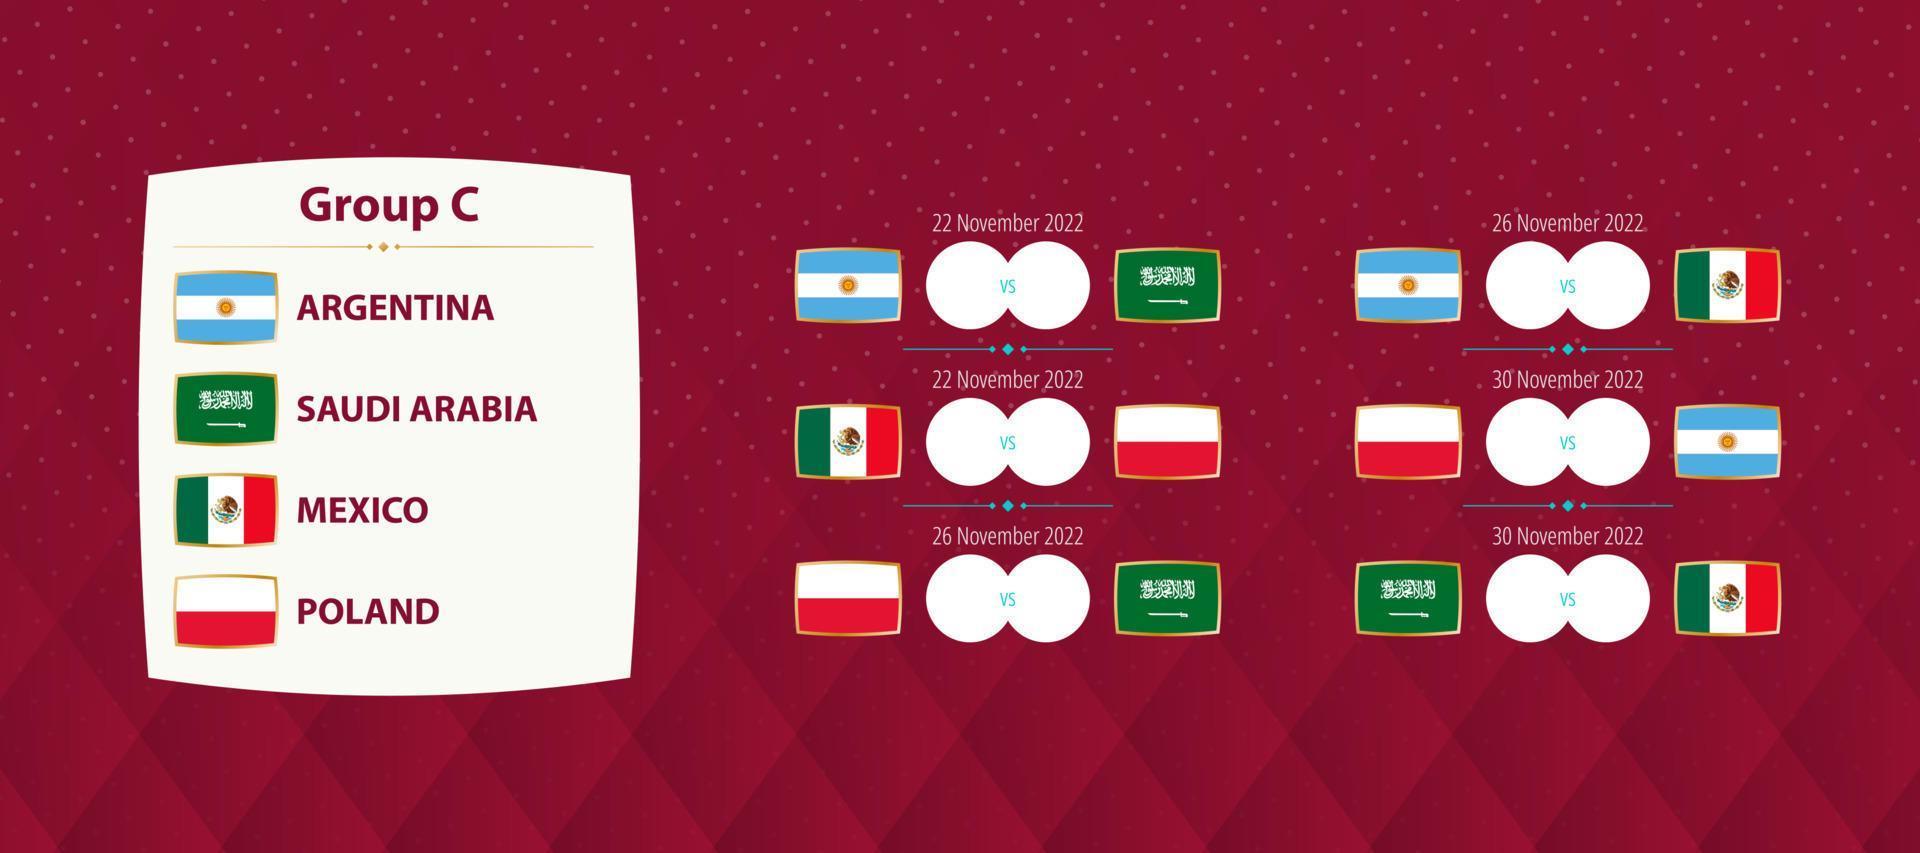 partidos del grupo c del torneo internacional de fútbol, partidos del calendario de la selección nacional de fútbol para la competencia 2022. vector